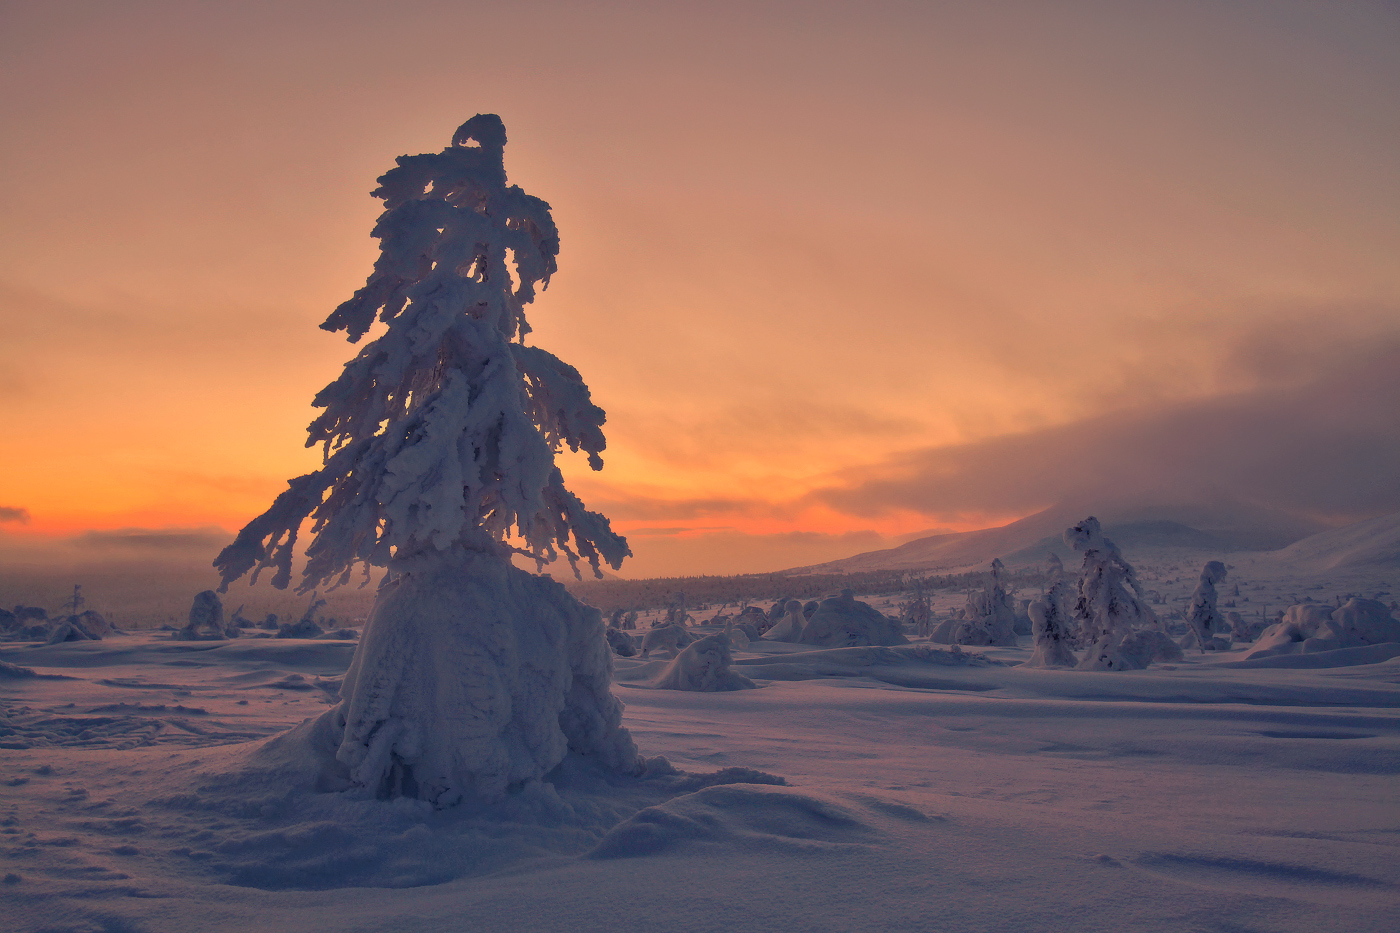 Одиночное дерево, стоящее на заснеженной поляне, покрытое густым слоем снега на фоне заката на вечернем небосклоне, автор Бродяга с севера